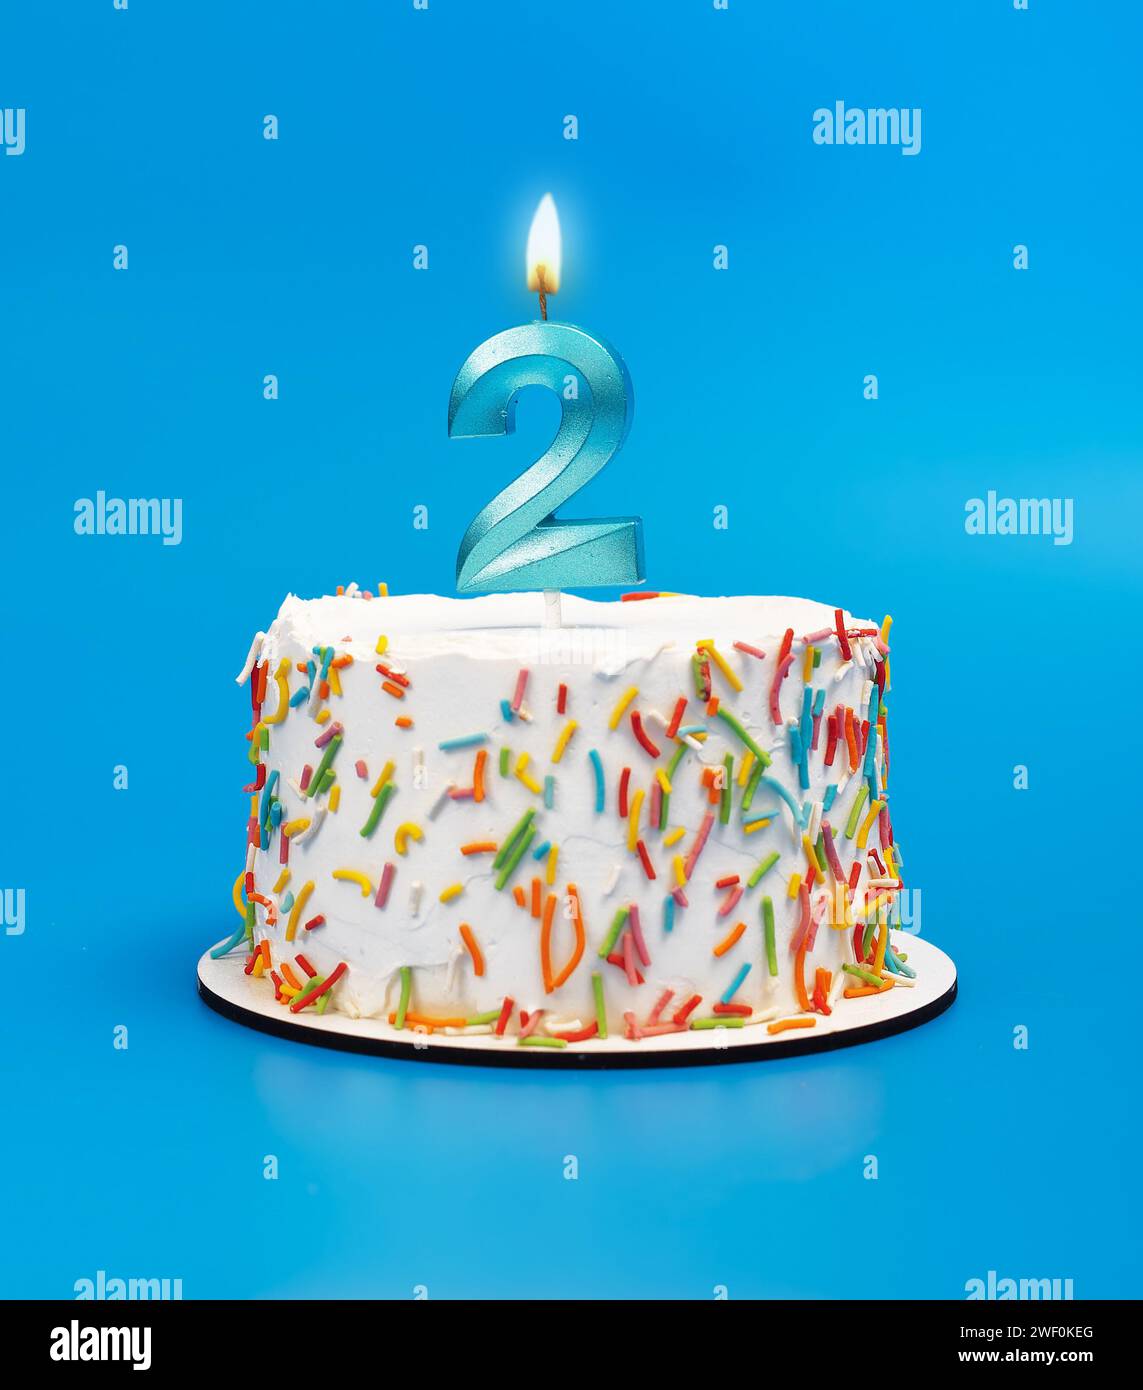 Feliz cumpleaños 2 fotografías e imágenes de alta resolución - Alamy